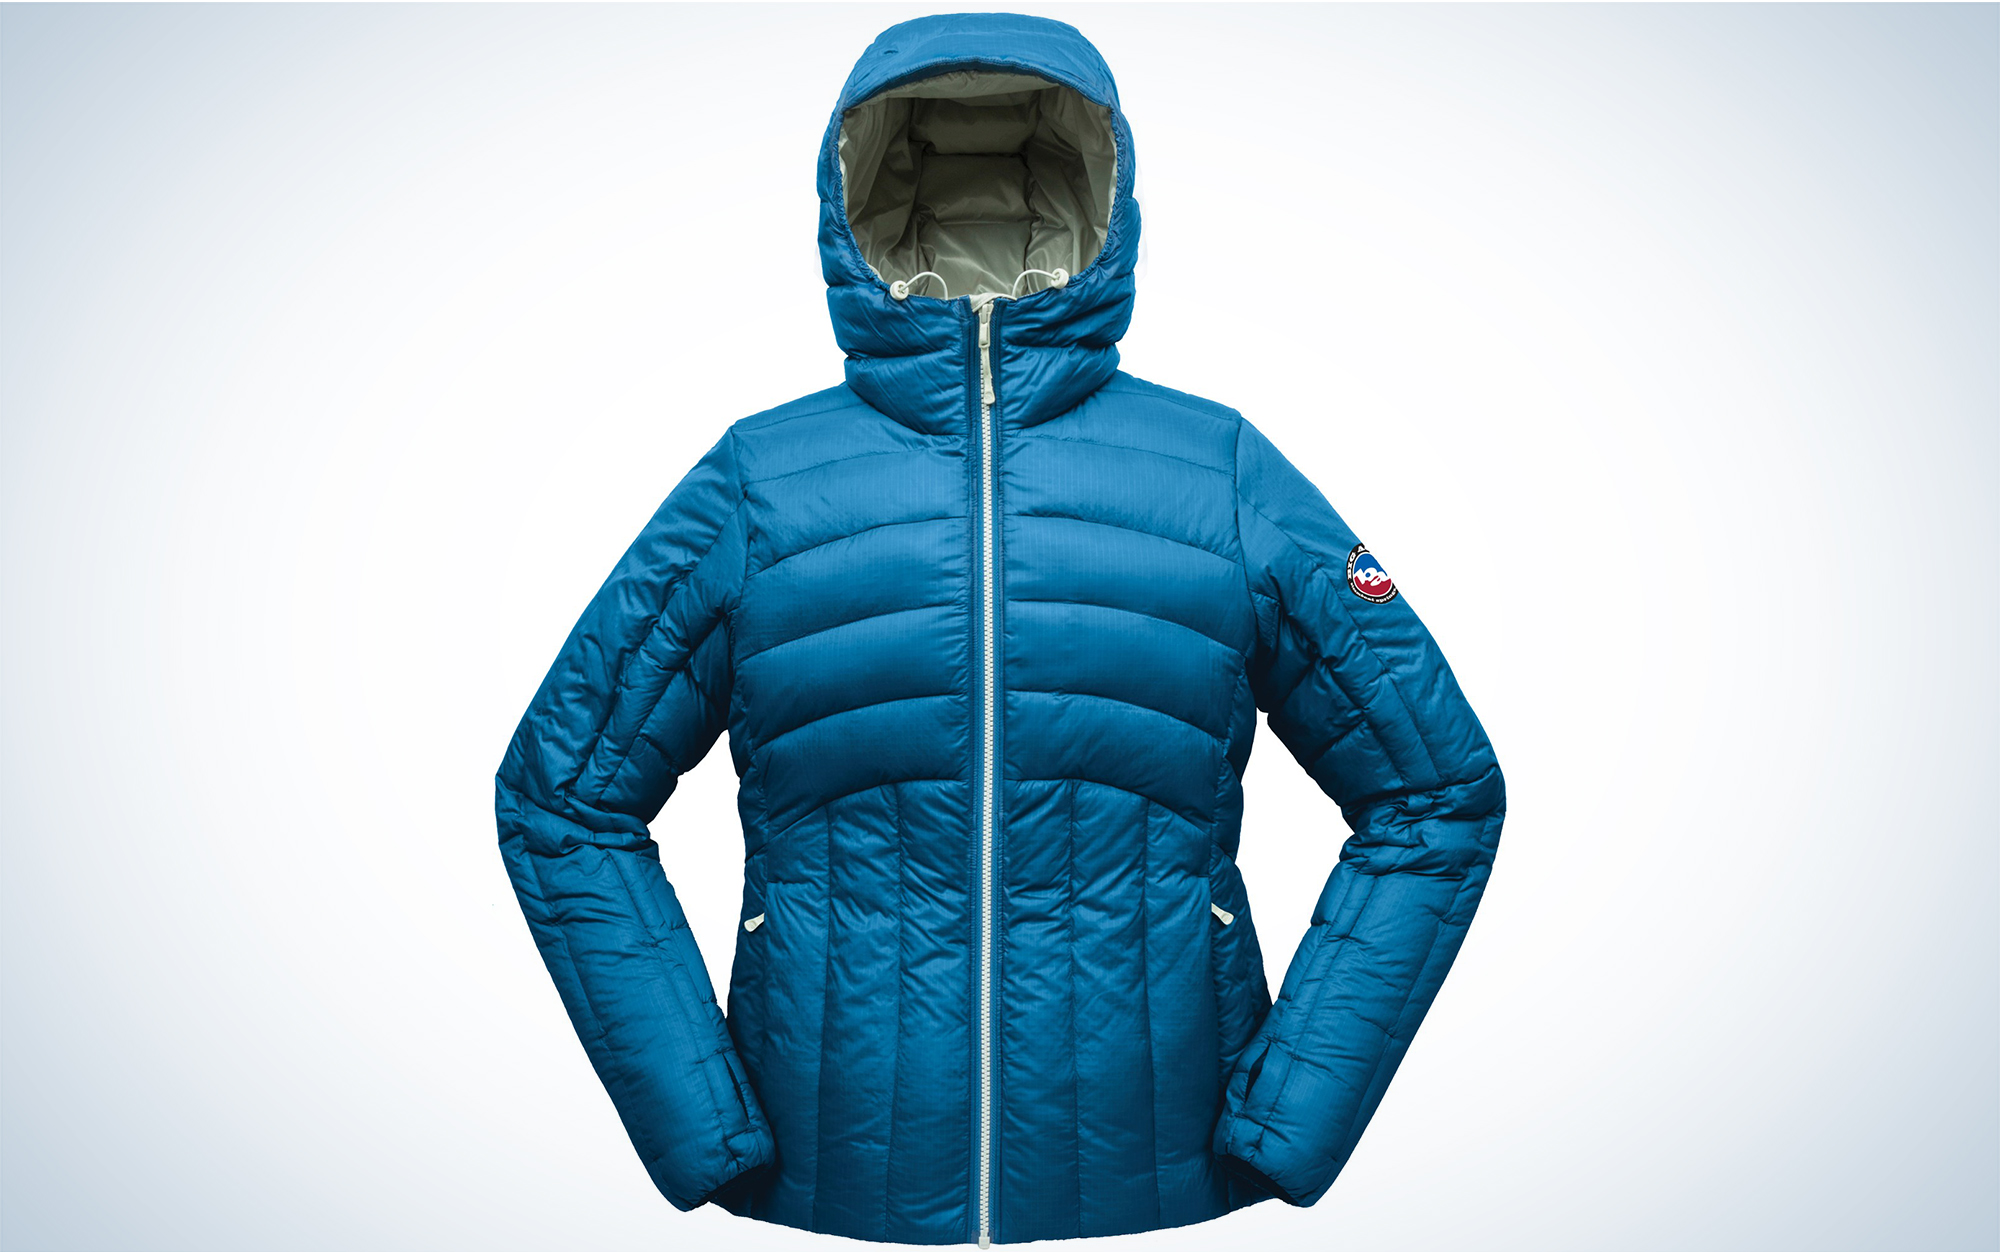 The Big Agnes Womenâs Luna Jacket is the best hiking jacket for cold weather.